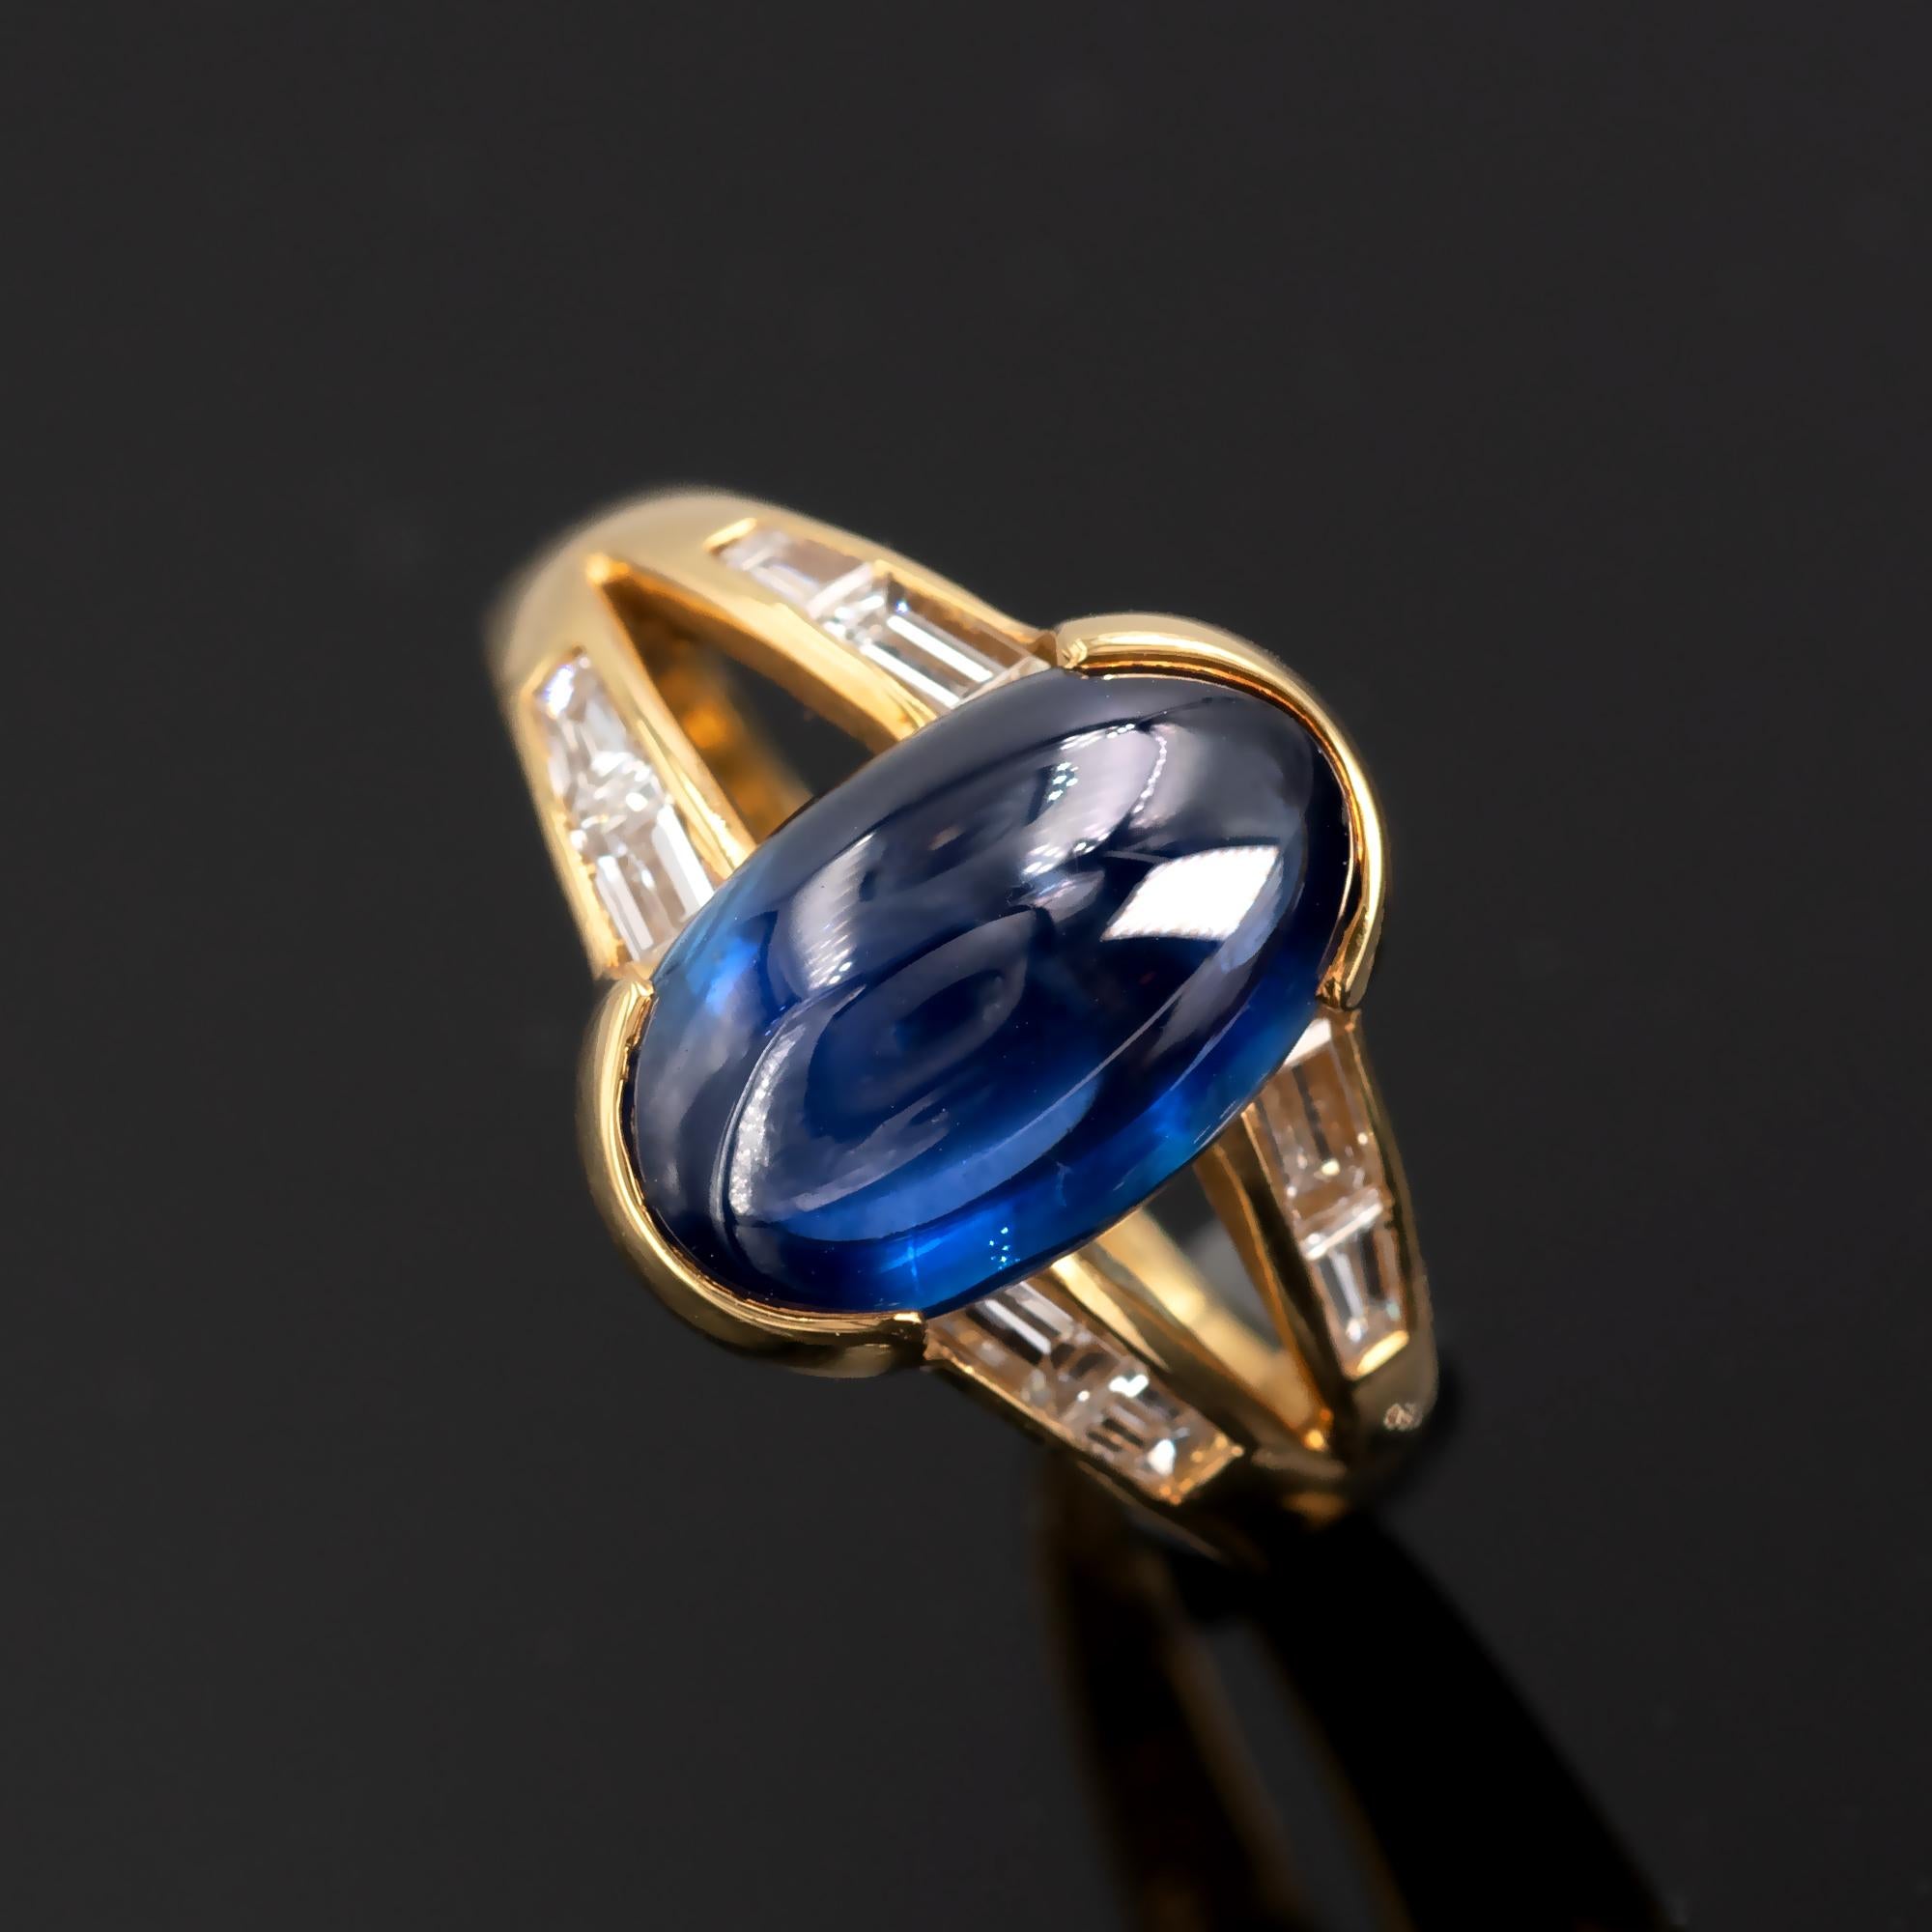 Moderner Ring aus 18-karätigem Gold, besetzt mit einem 12 x 7,6 m großen Saphir im Cabochon-Schliff und Diamanten im Baguetteschliff. Das sehr moderne Design wurde von den reinen Linien des Art-Deco beeinflusst.

Der Saphir ist intensiv blau und hat